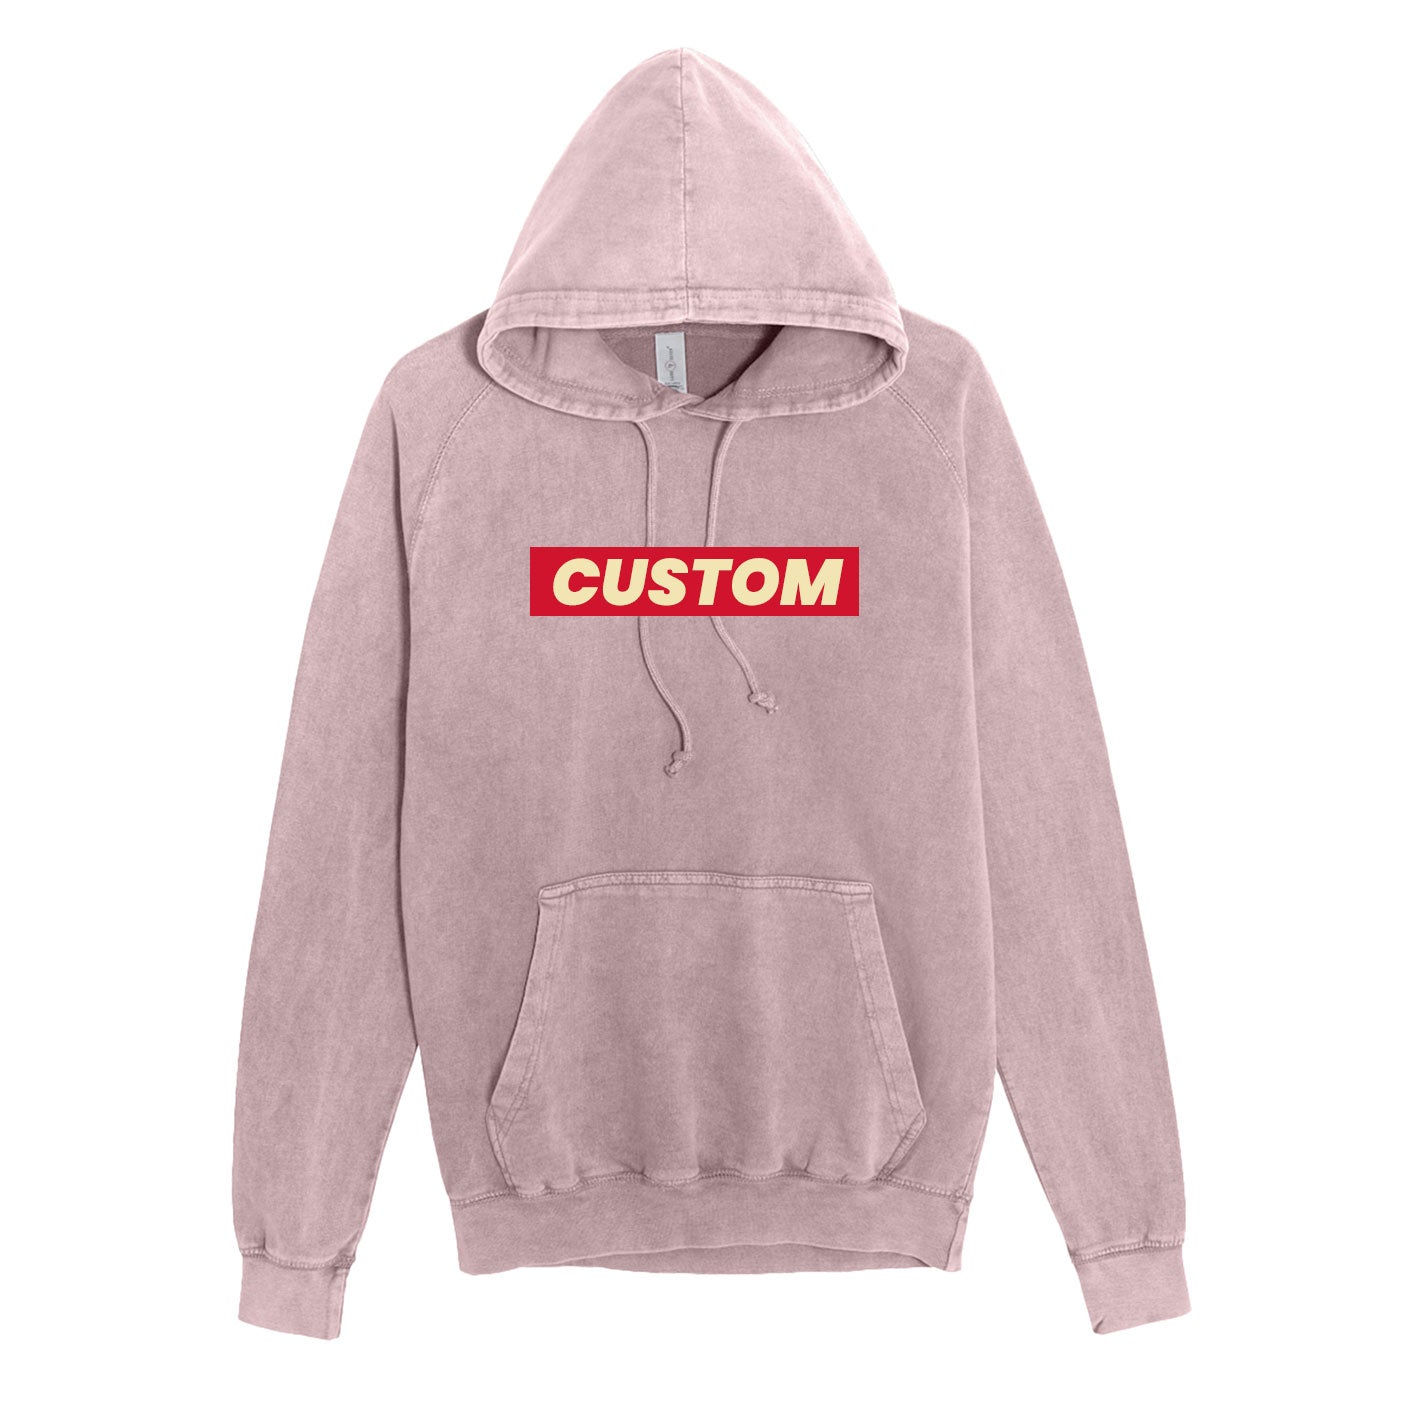 custom vintage hoodies in grey